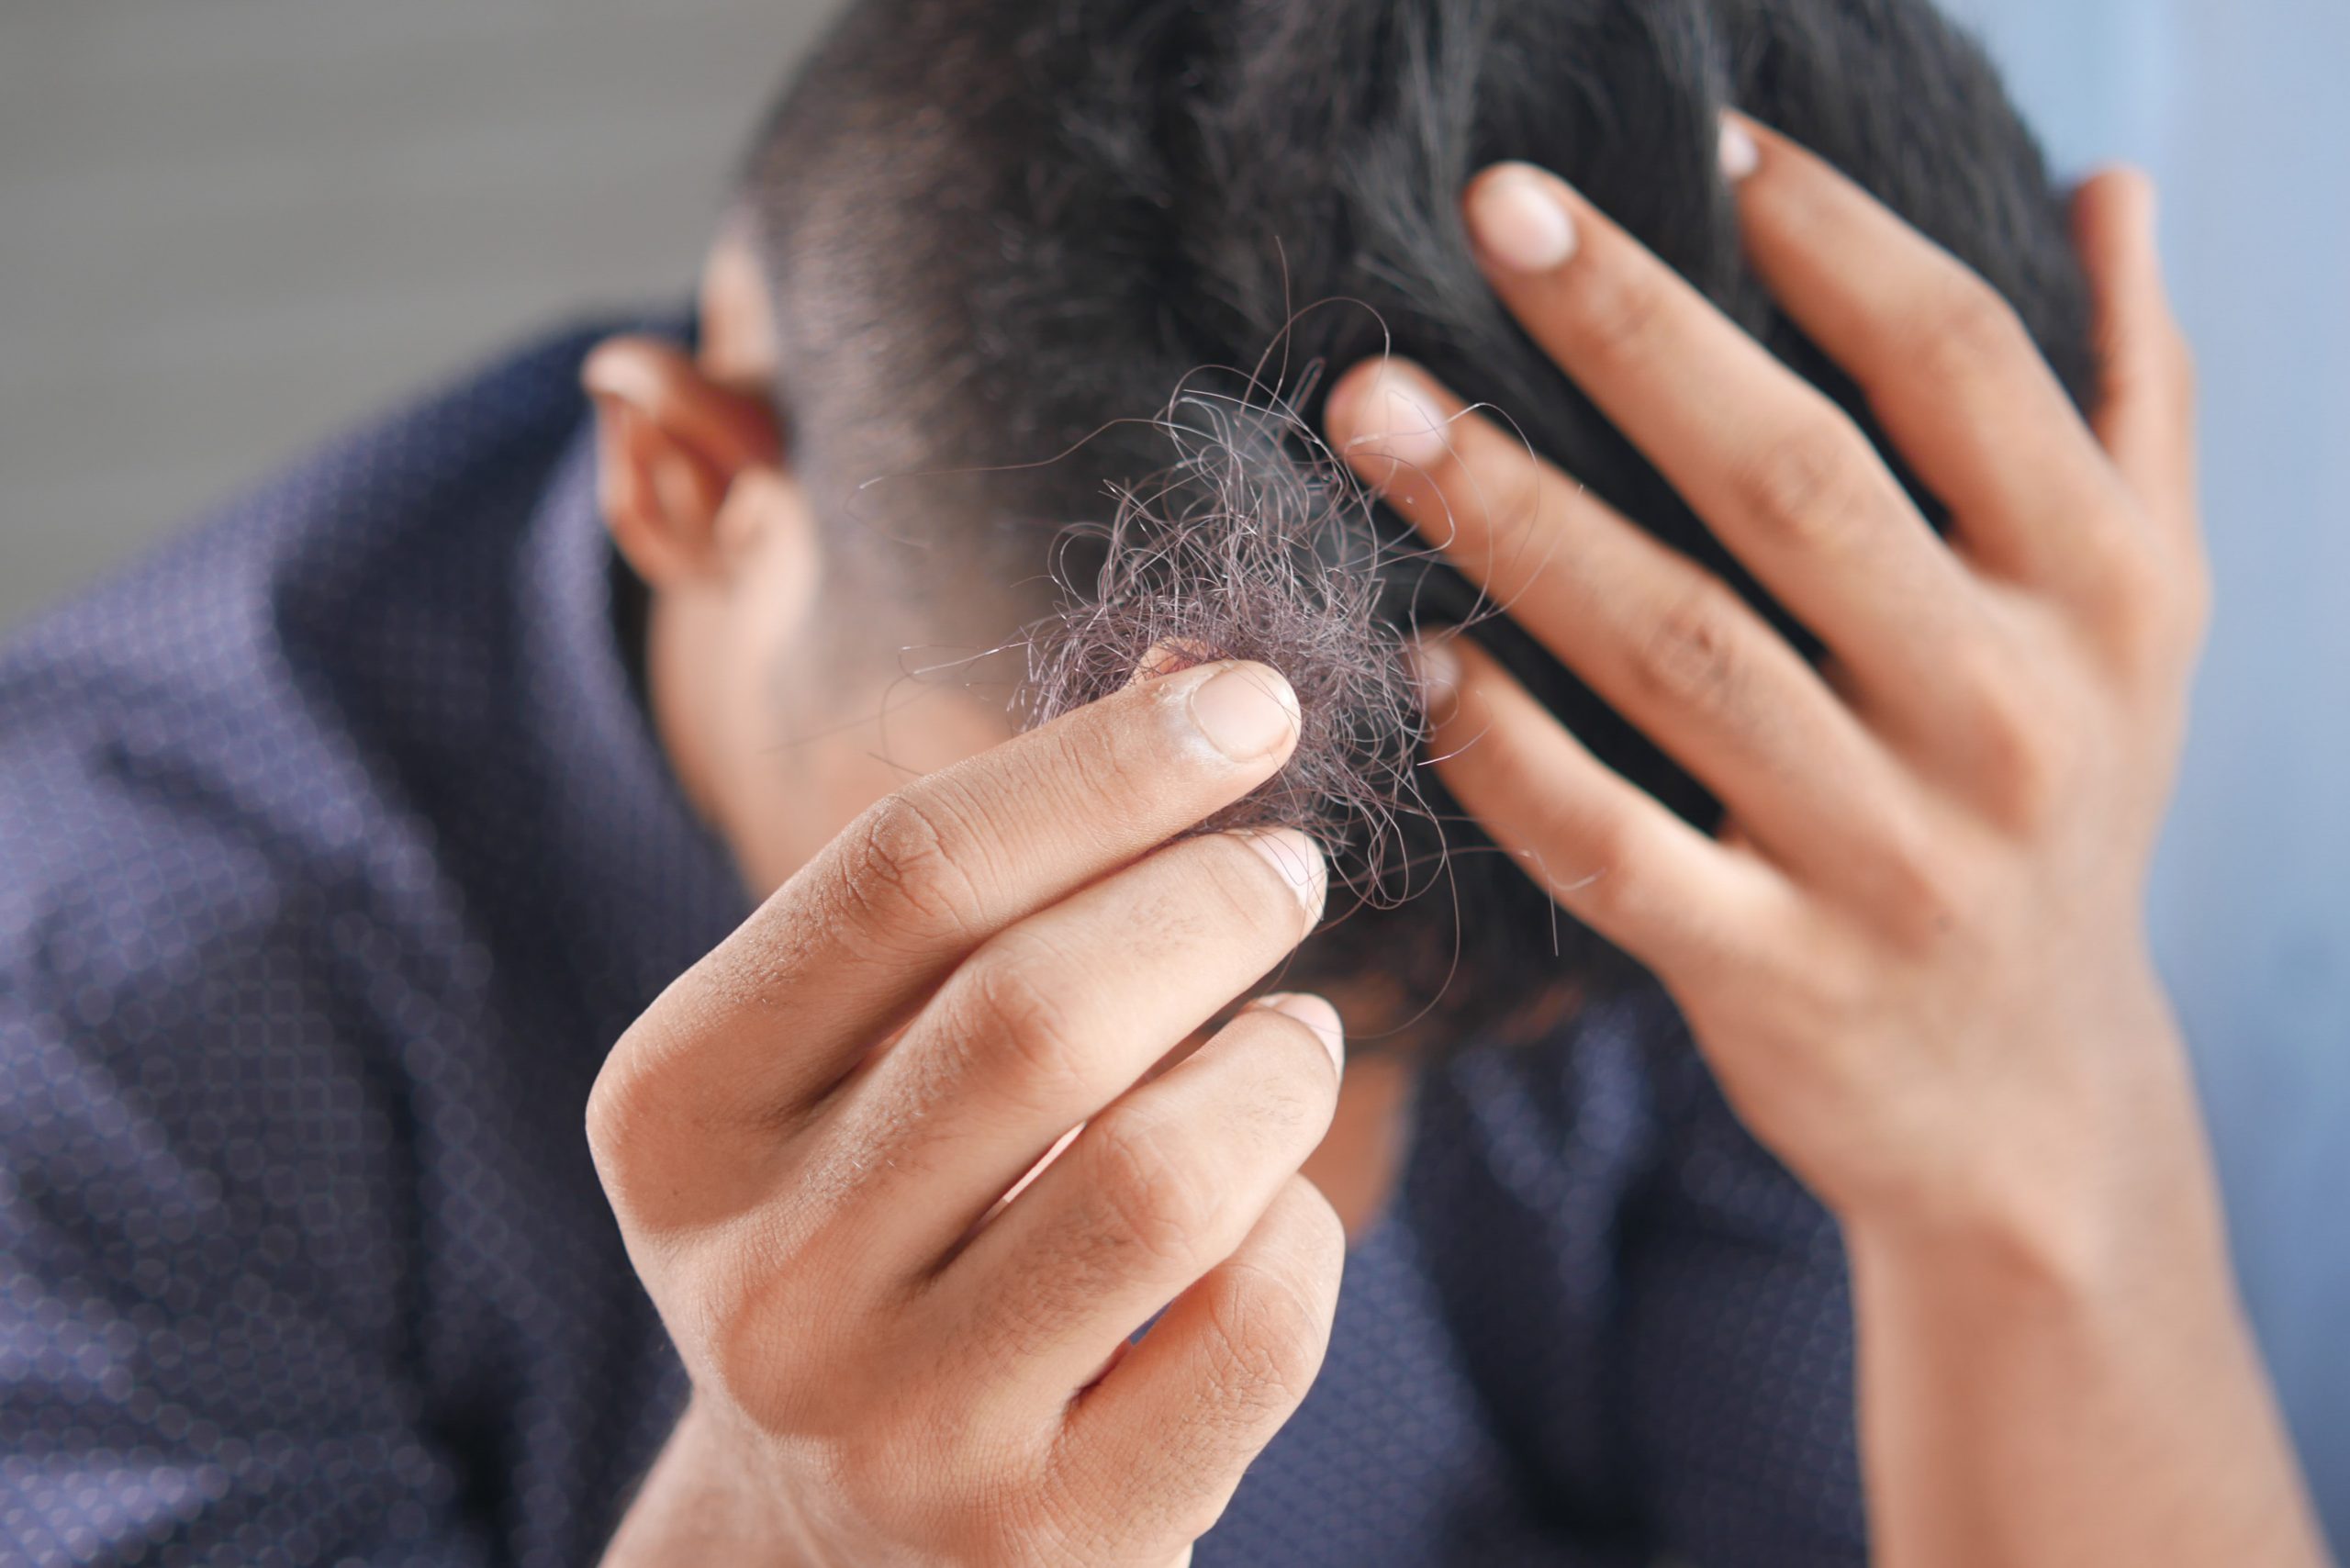 Grijze haren voorkomen voor mannen – 5 handige tips